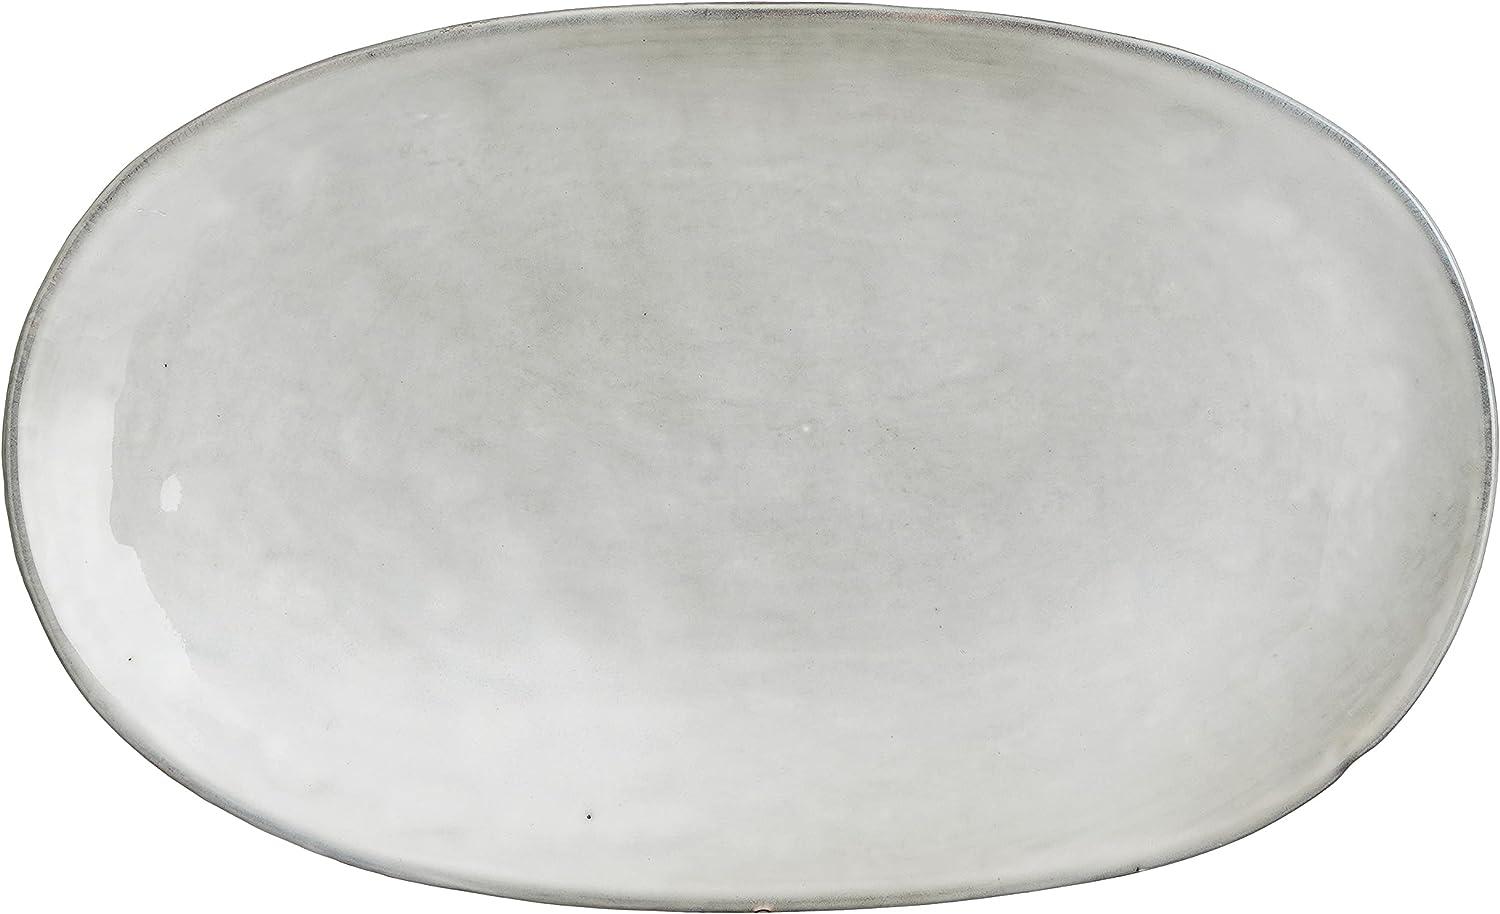 Mica Platte Tabo grau, 35,5 x 21,5 x 4,5 cm Bild 1